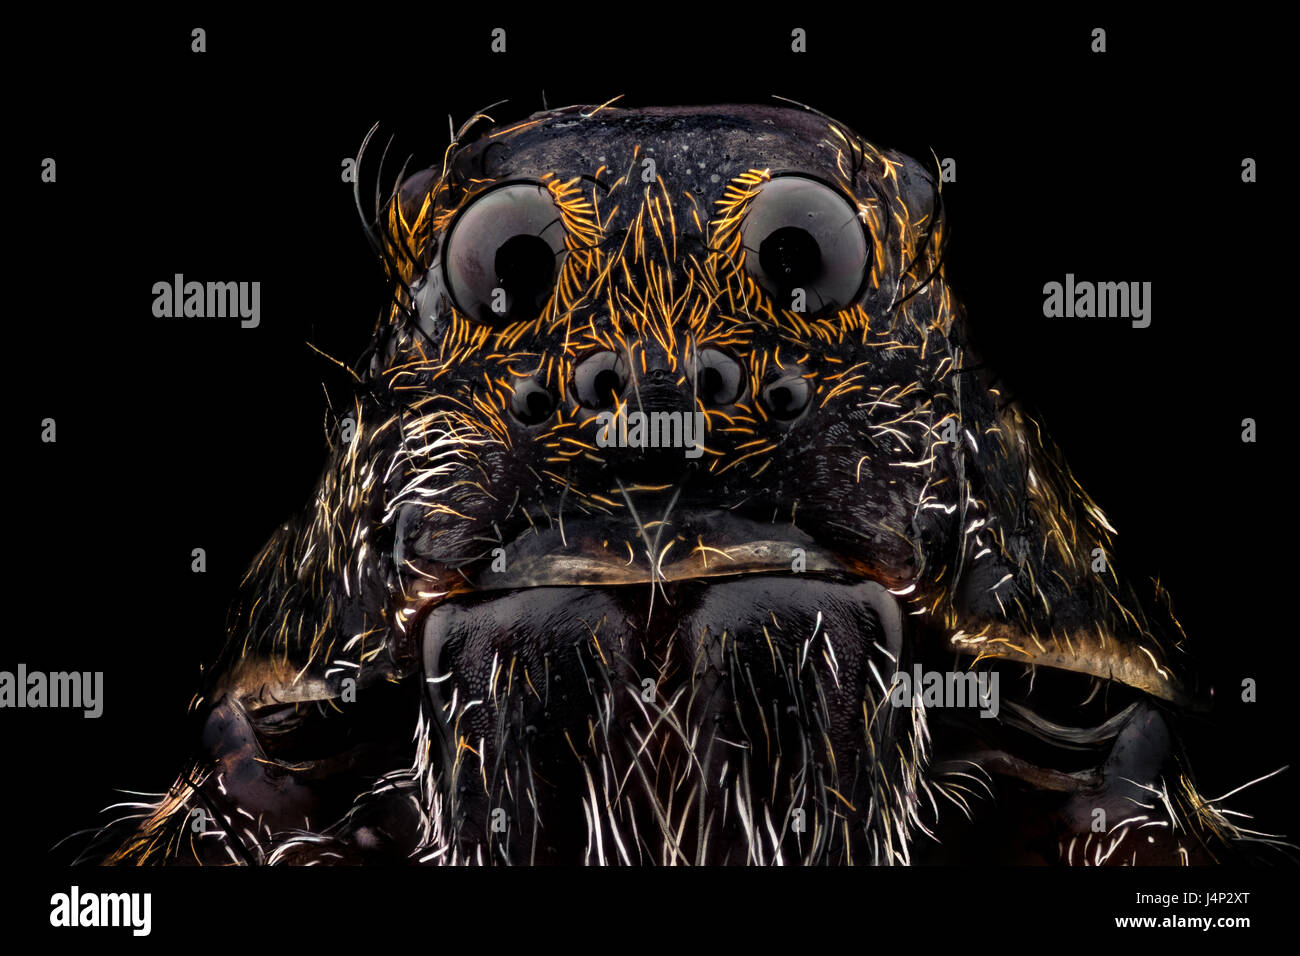 Ritratto di un lupo spider ingrandito 10 volte. La vita reale larghezza del telaio è 2,2 mm. Foto Stock